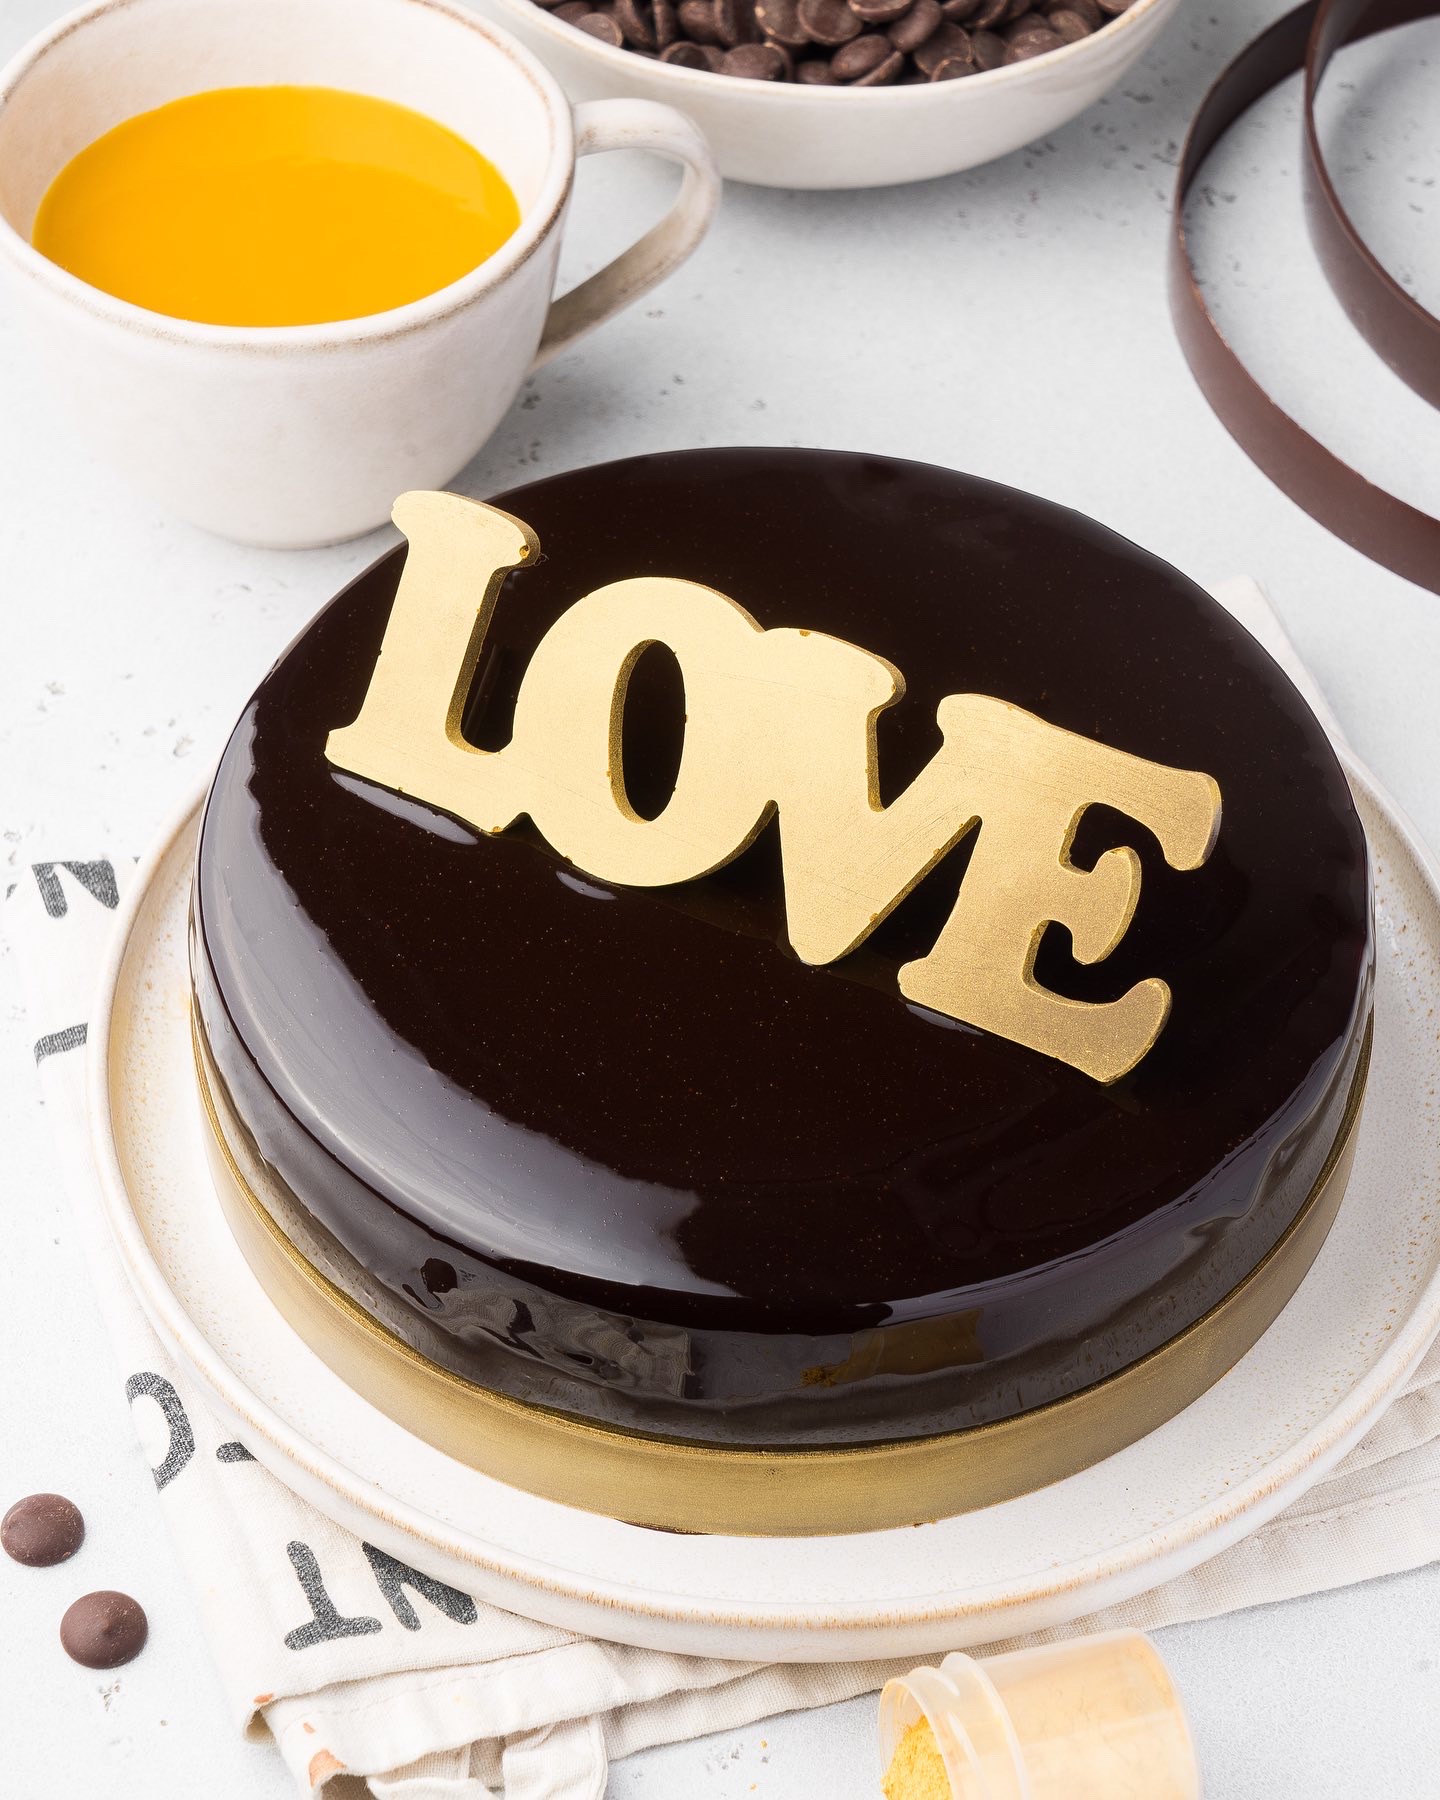 Современные десерты: муссовый шоколадный торт «Шоколадная любовь» | Andy  Chef (Энди Шеф) — блог о еде и путешествиях, пошаговые рецепты,  интернет-магазин для кондитеров |